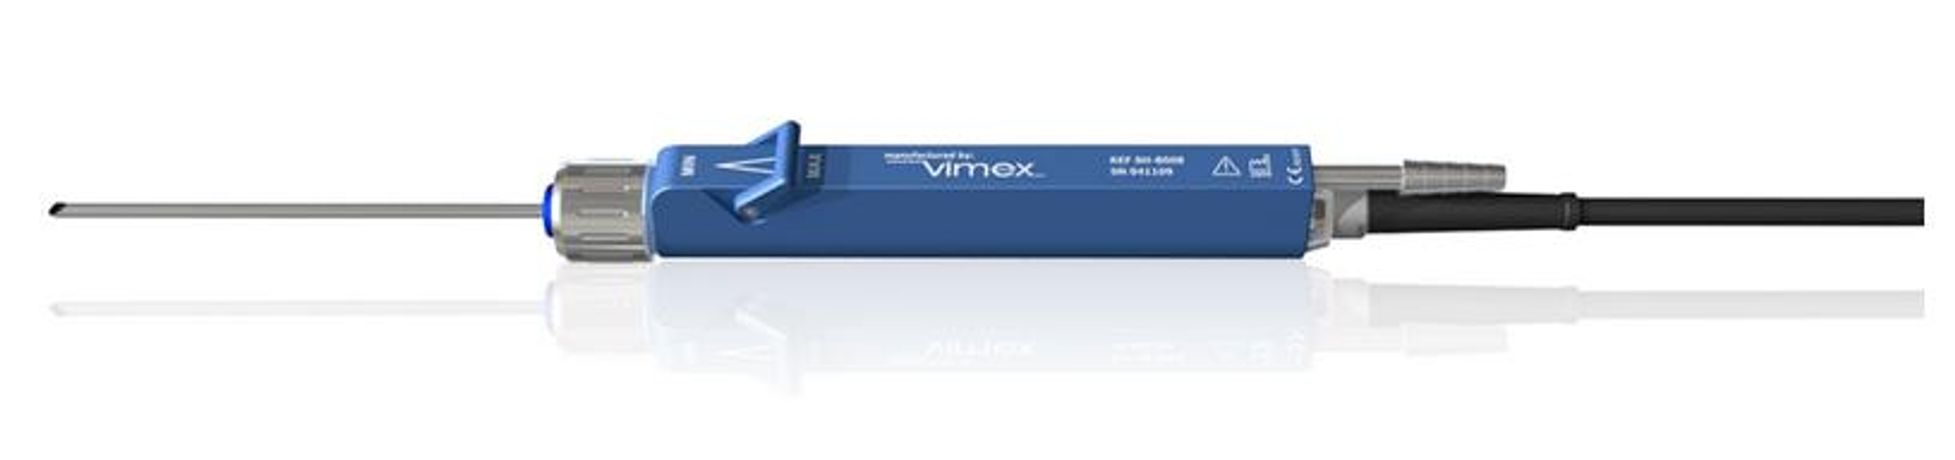 Vimex - Shaver Handpiece